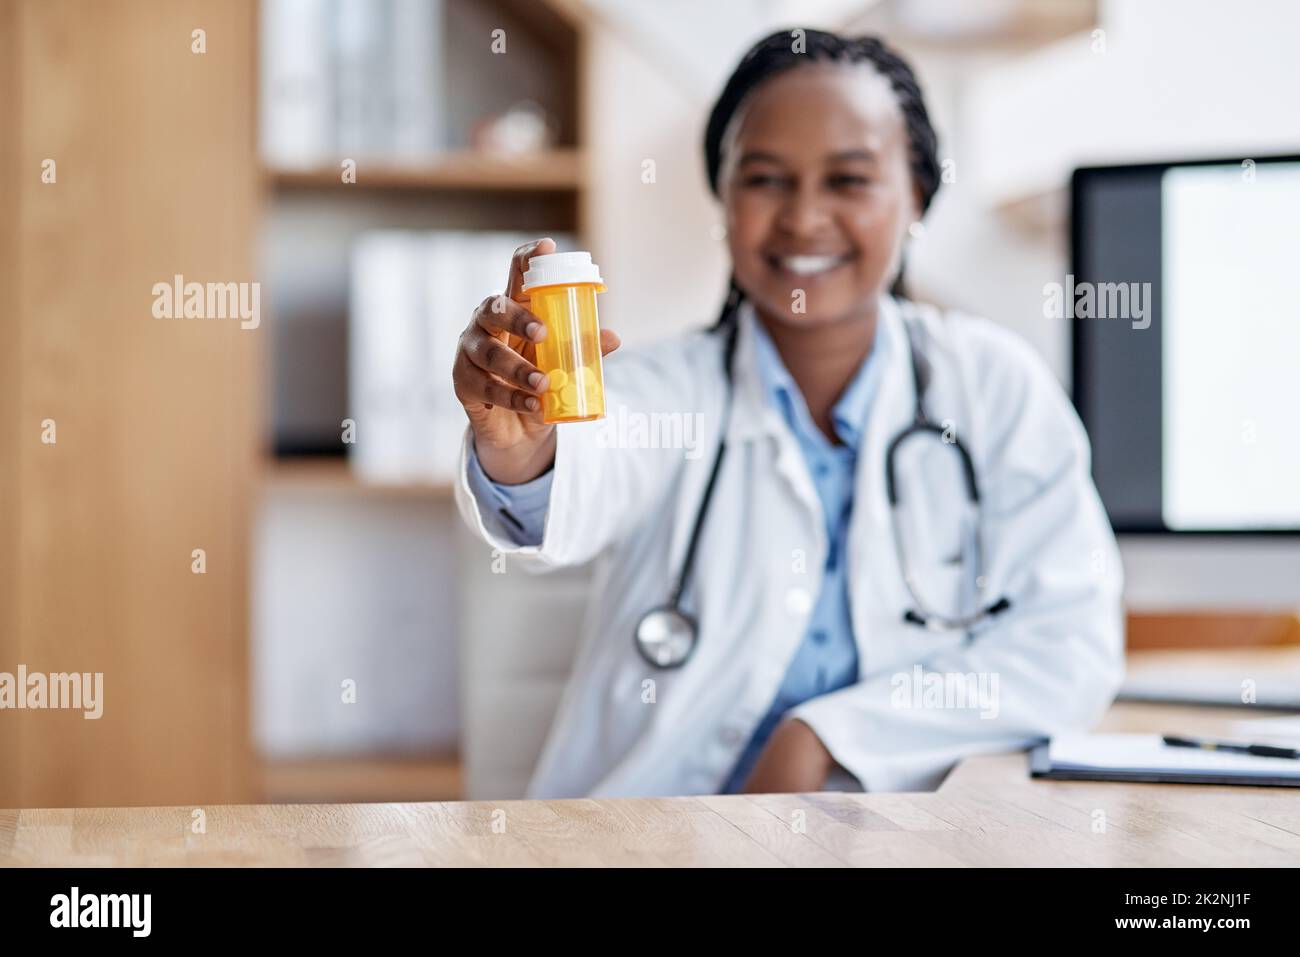 Nehmt diese und ruht Euch aus. Porträt einer jungen Ärztin, die eine Flasche Pillen in ihrem Büro hält. Stockfoto